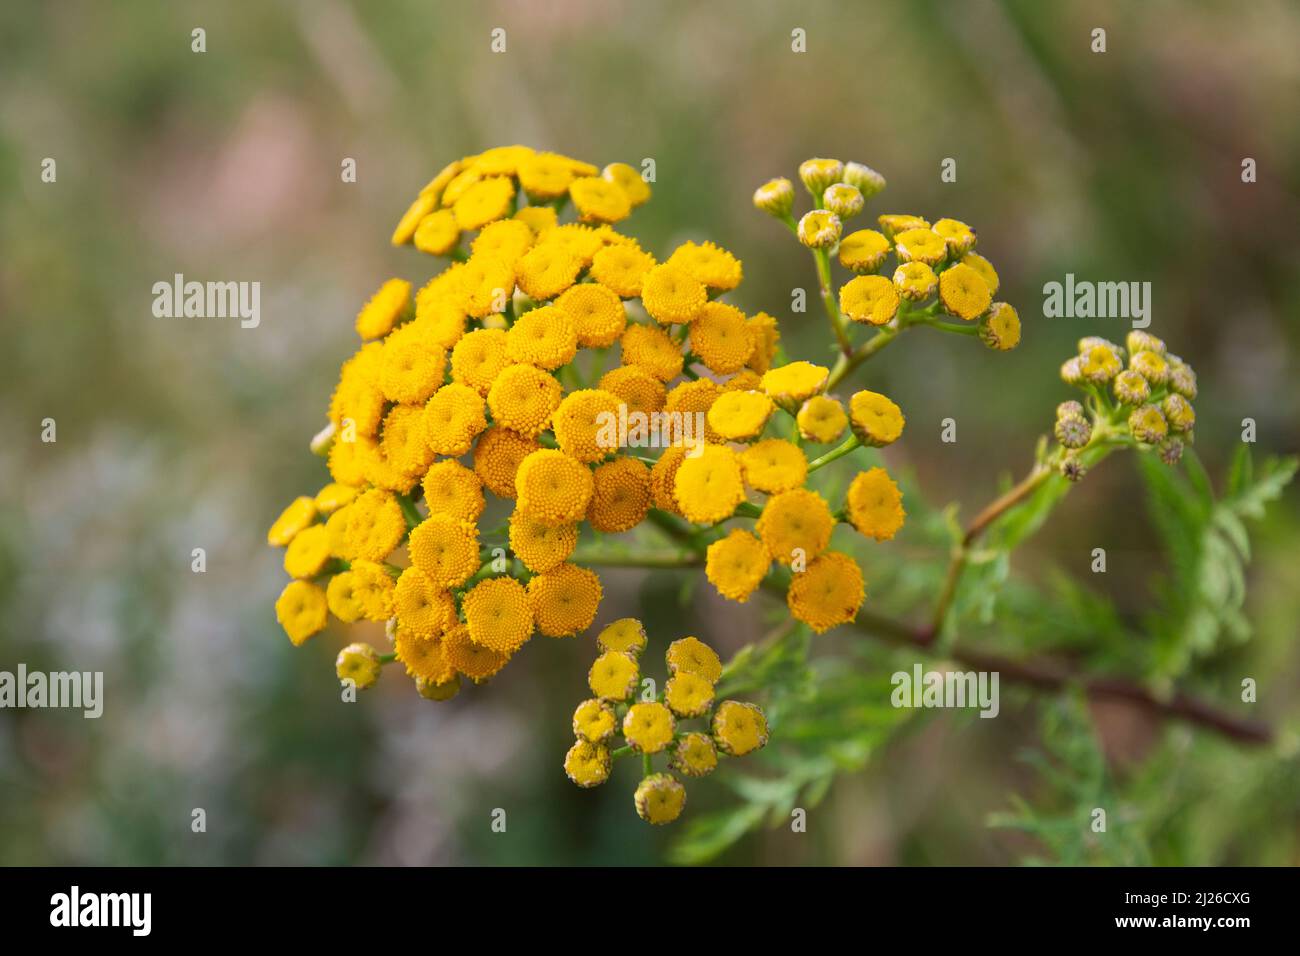 Gelbe, giftige Rainfarn Blüte im Sommer Foto Stock